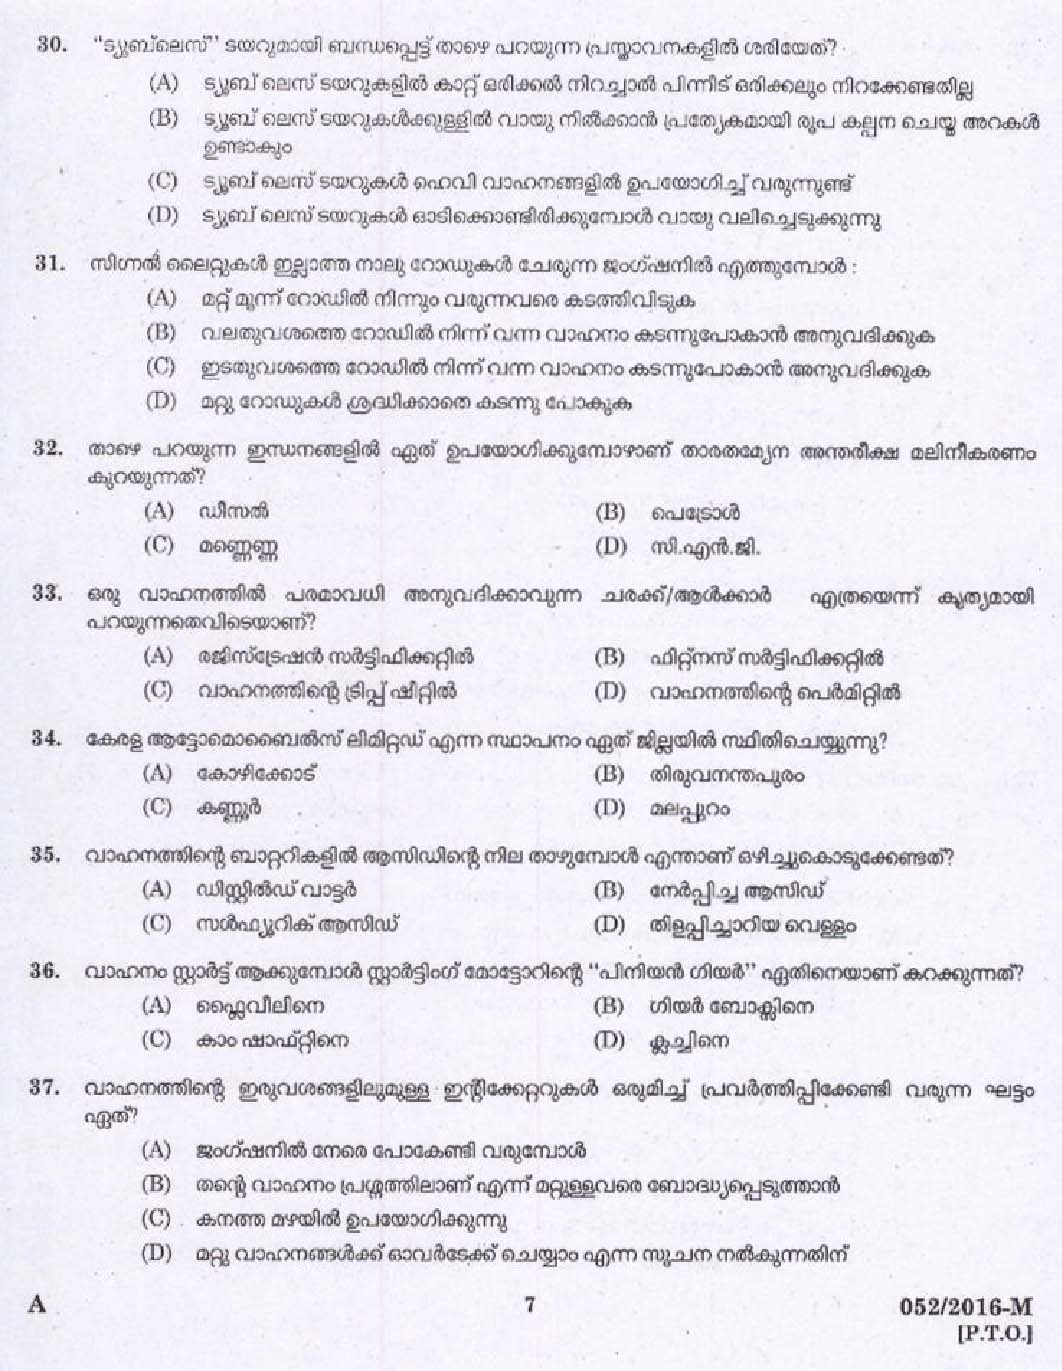 Kerala PSC Driver Grade II Exam 2016 Question Paper Code 0522016 M 5